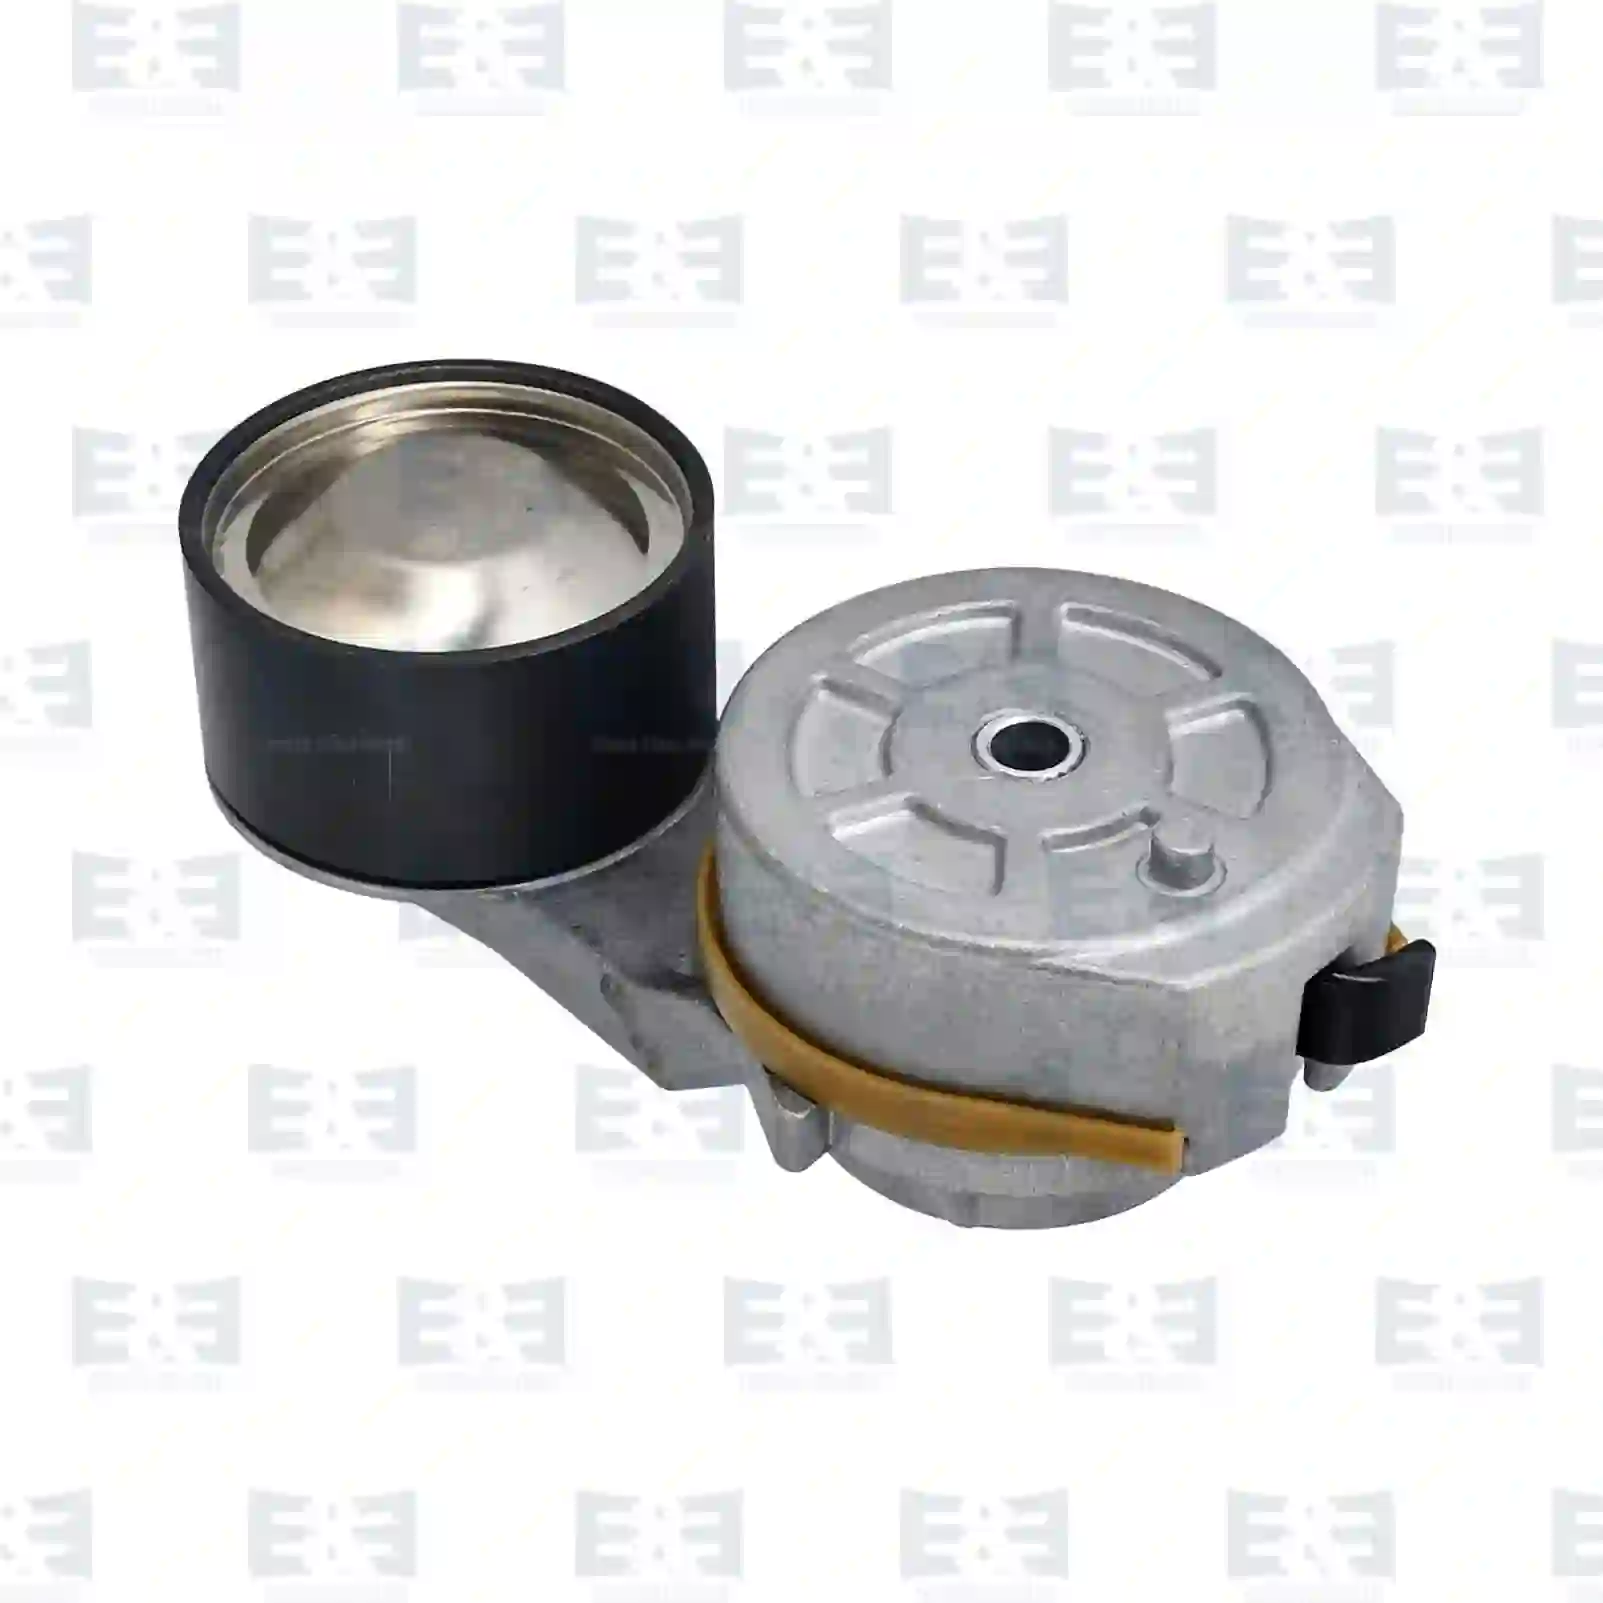  Belt tensioner, new version || E&E Truck Spare Parts | Truck Spare Parts, Auotomotive Spare Parts